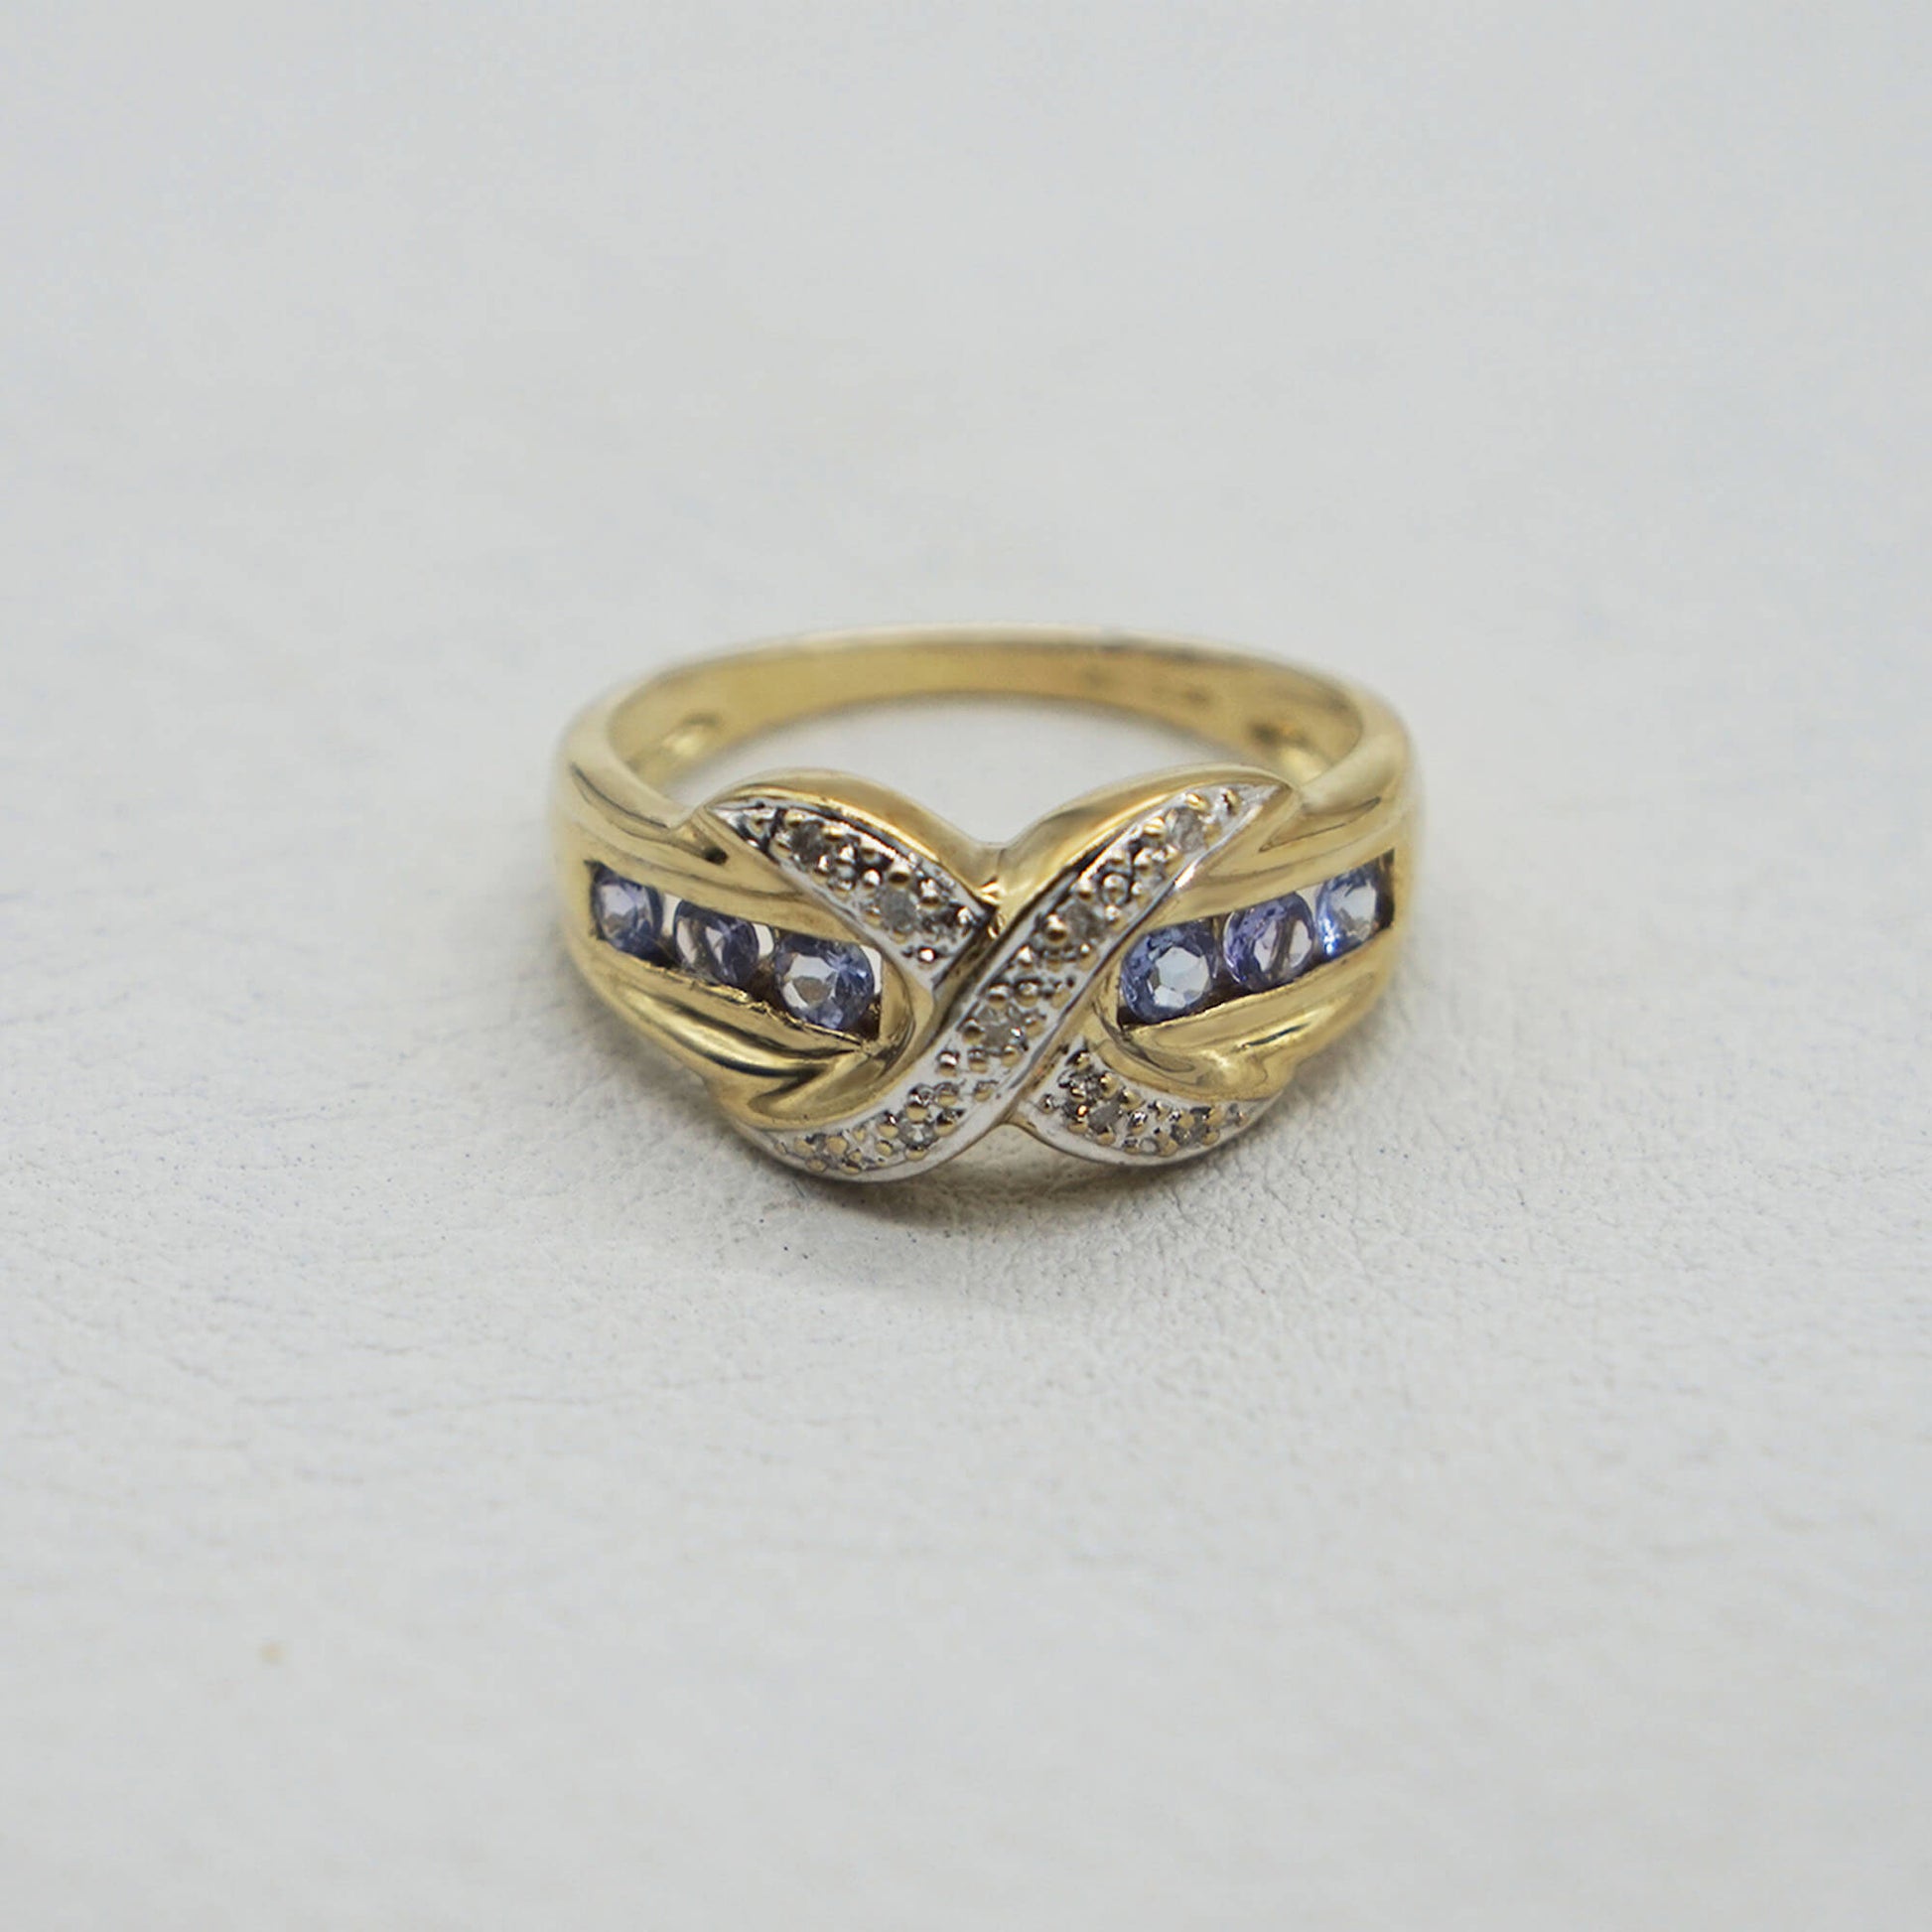 Vintage 9K gold diamond kiss setting- tanzanite stones set across band on white textured background.